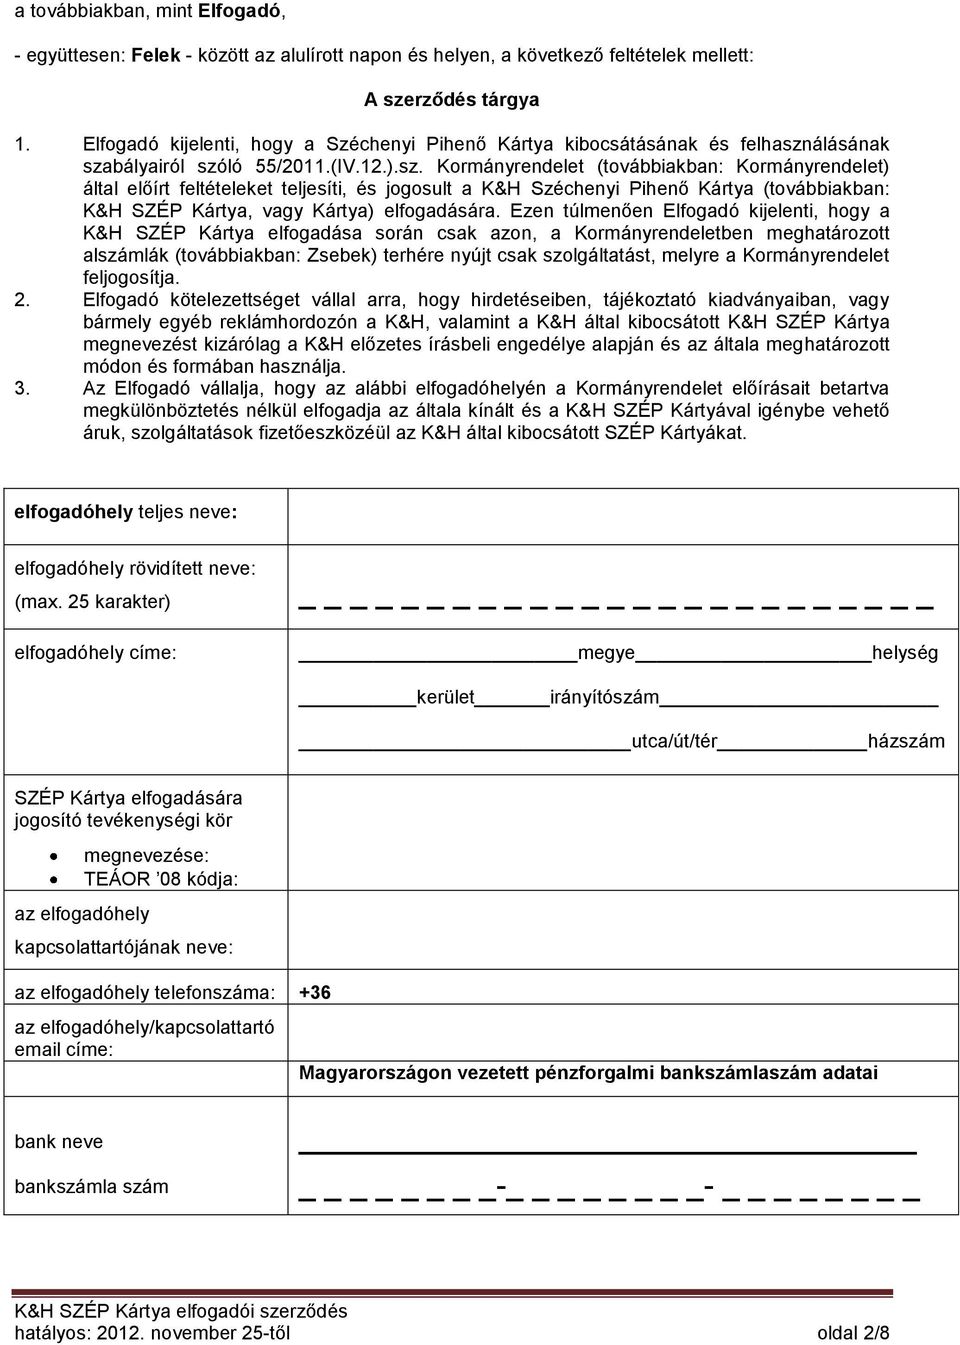 K&H SZÉP Kártya elfogadási szerződés - PDF Ingyenes letöltés